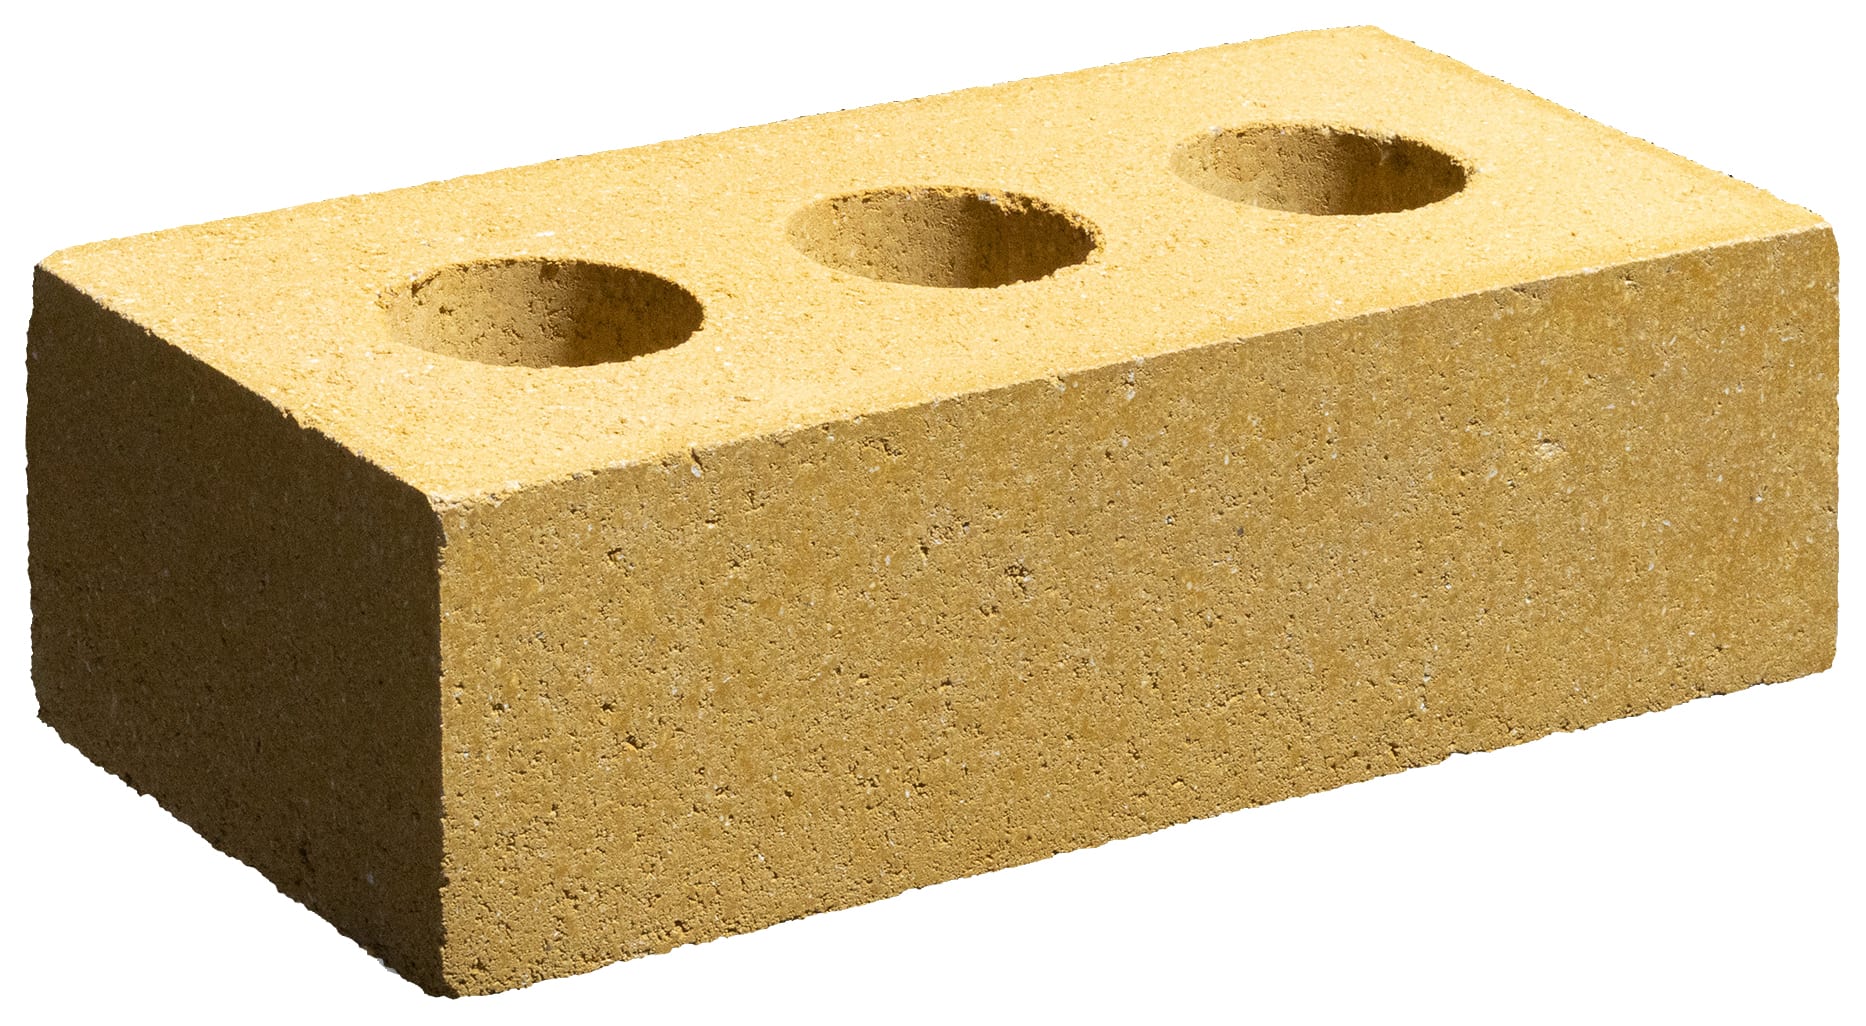 Marshalls Ashdown Buff Facing Brick - 215 x